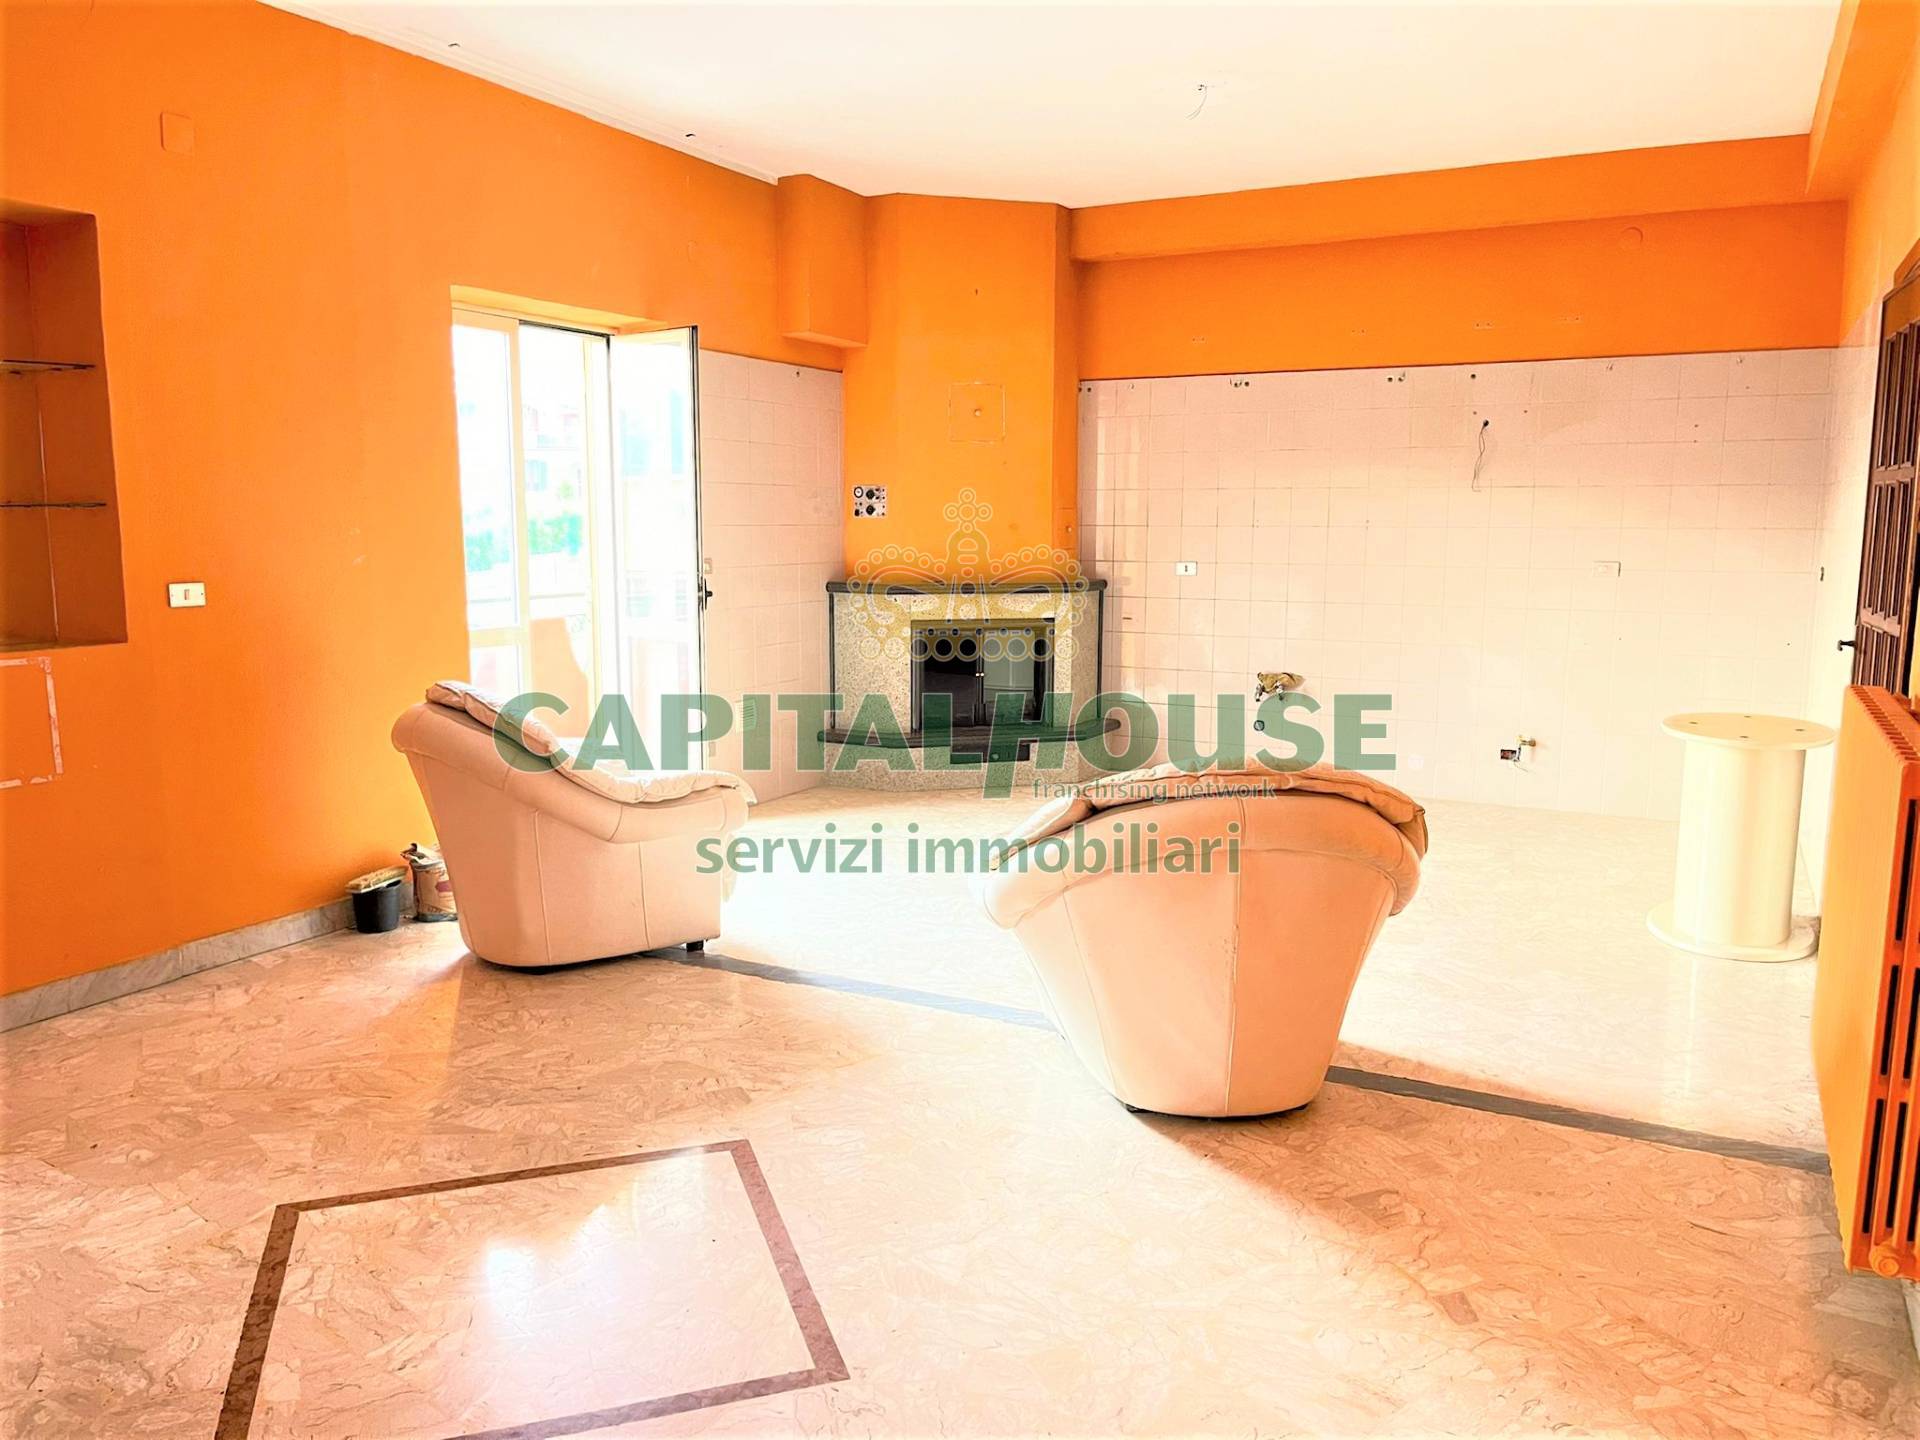 Appartamento in vendita a Avella, 4 locali, prezzo € 115.000 | CambioCasa.it